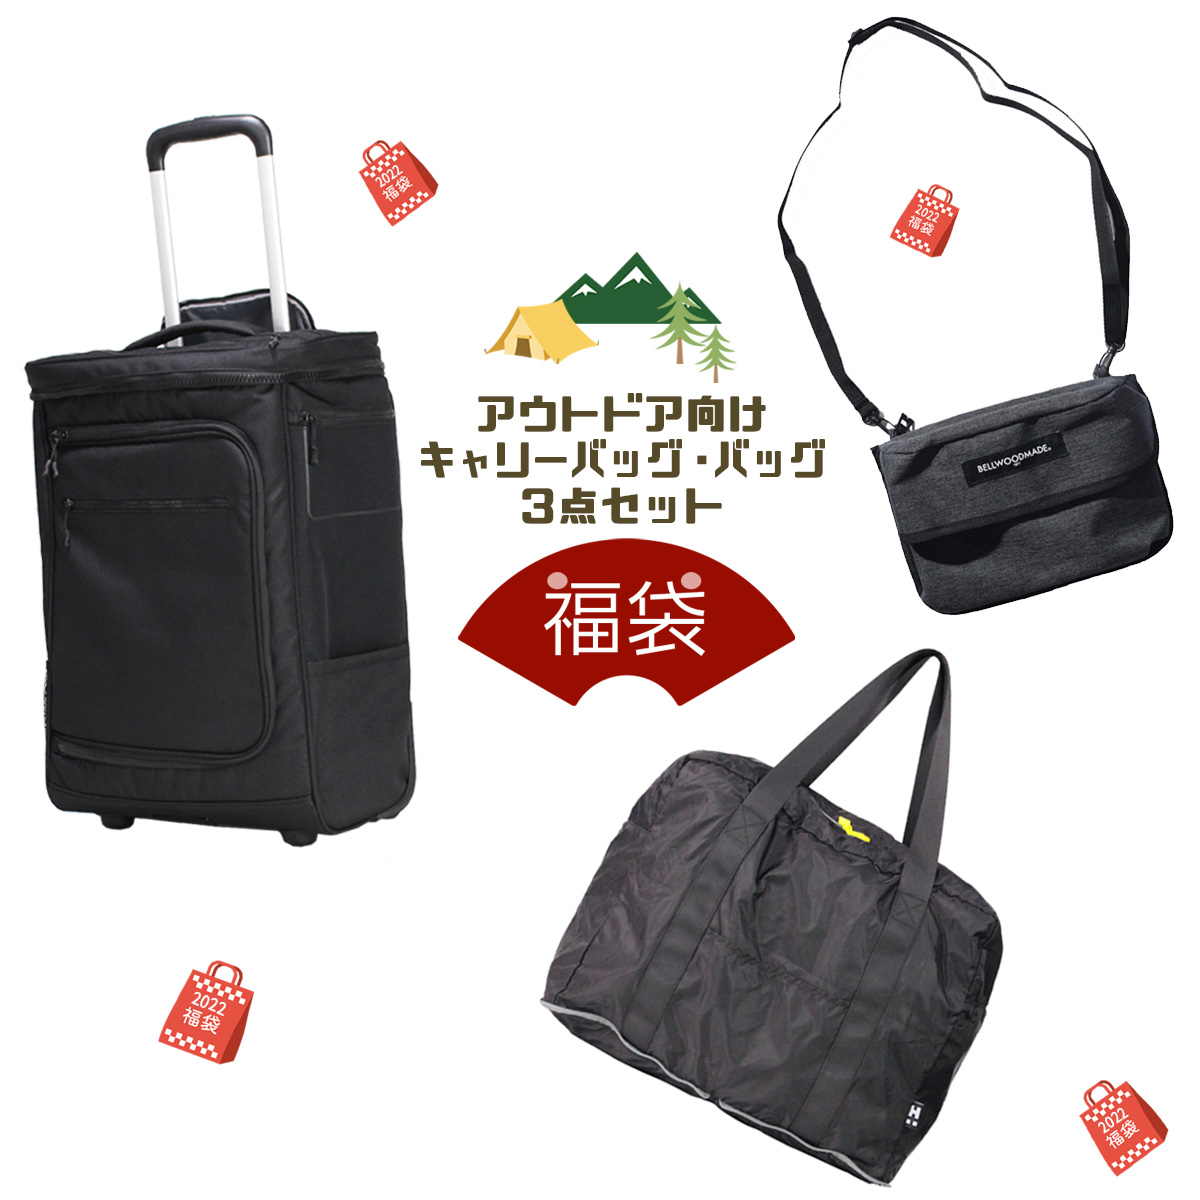 90%OFF!】 超美品キャリーケース 表参道ヒルズChucks Tokyo carry bag 